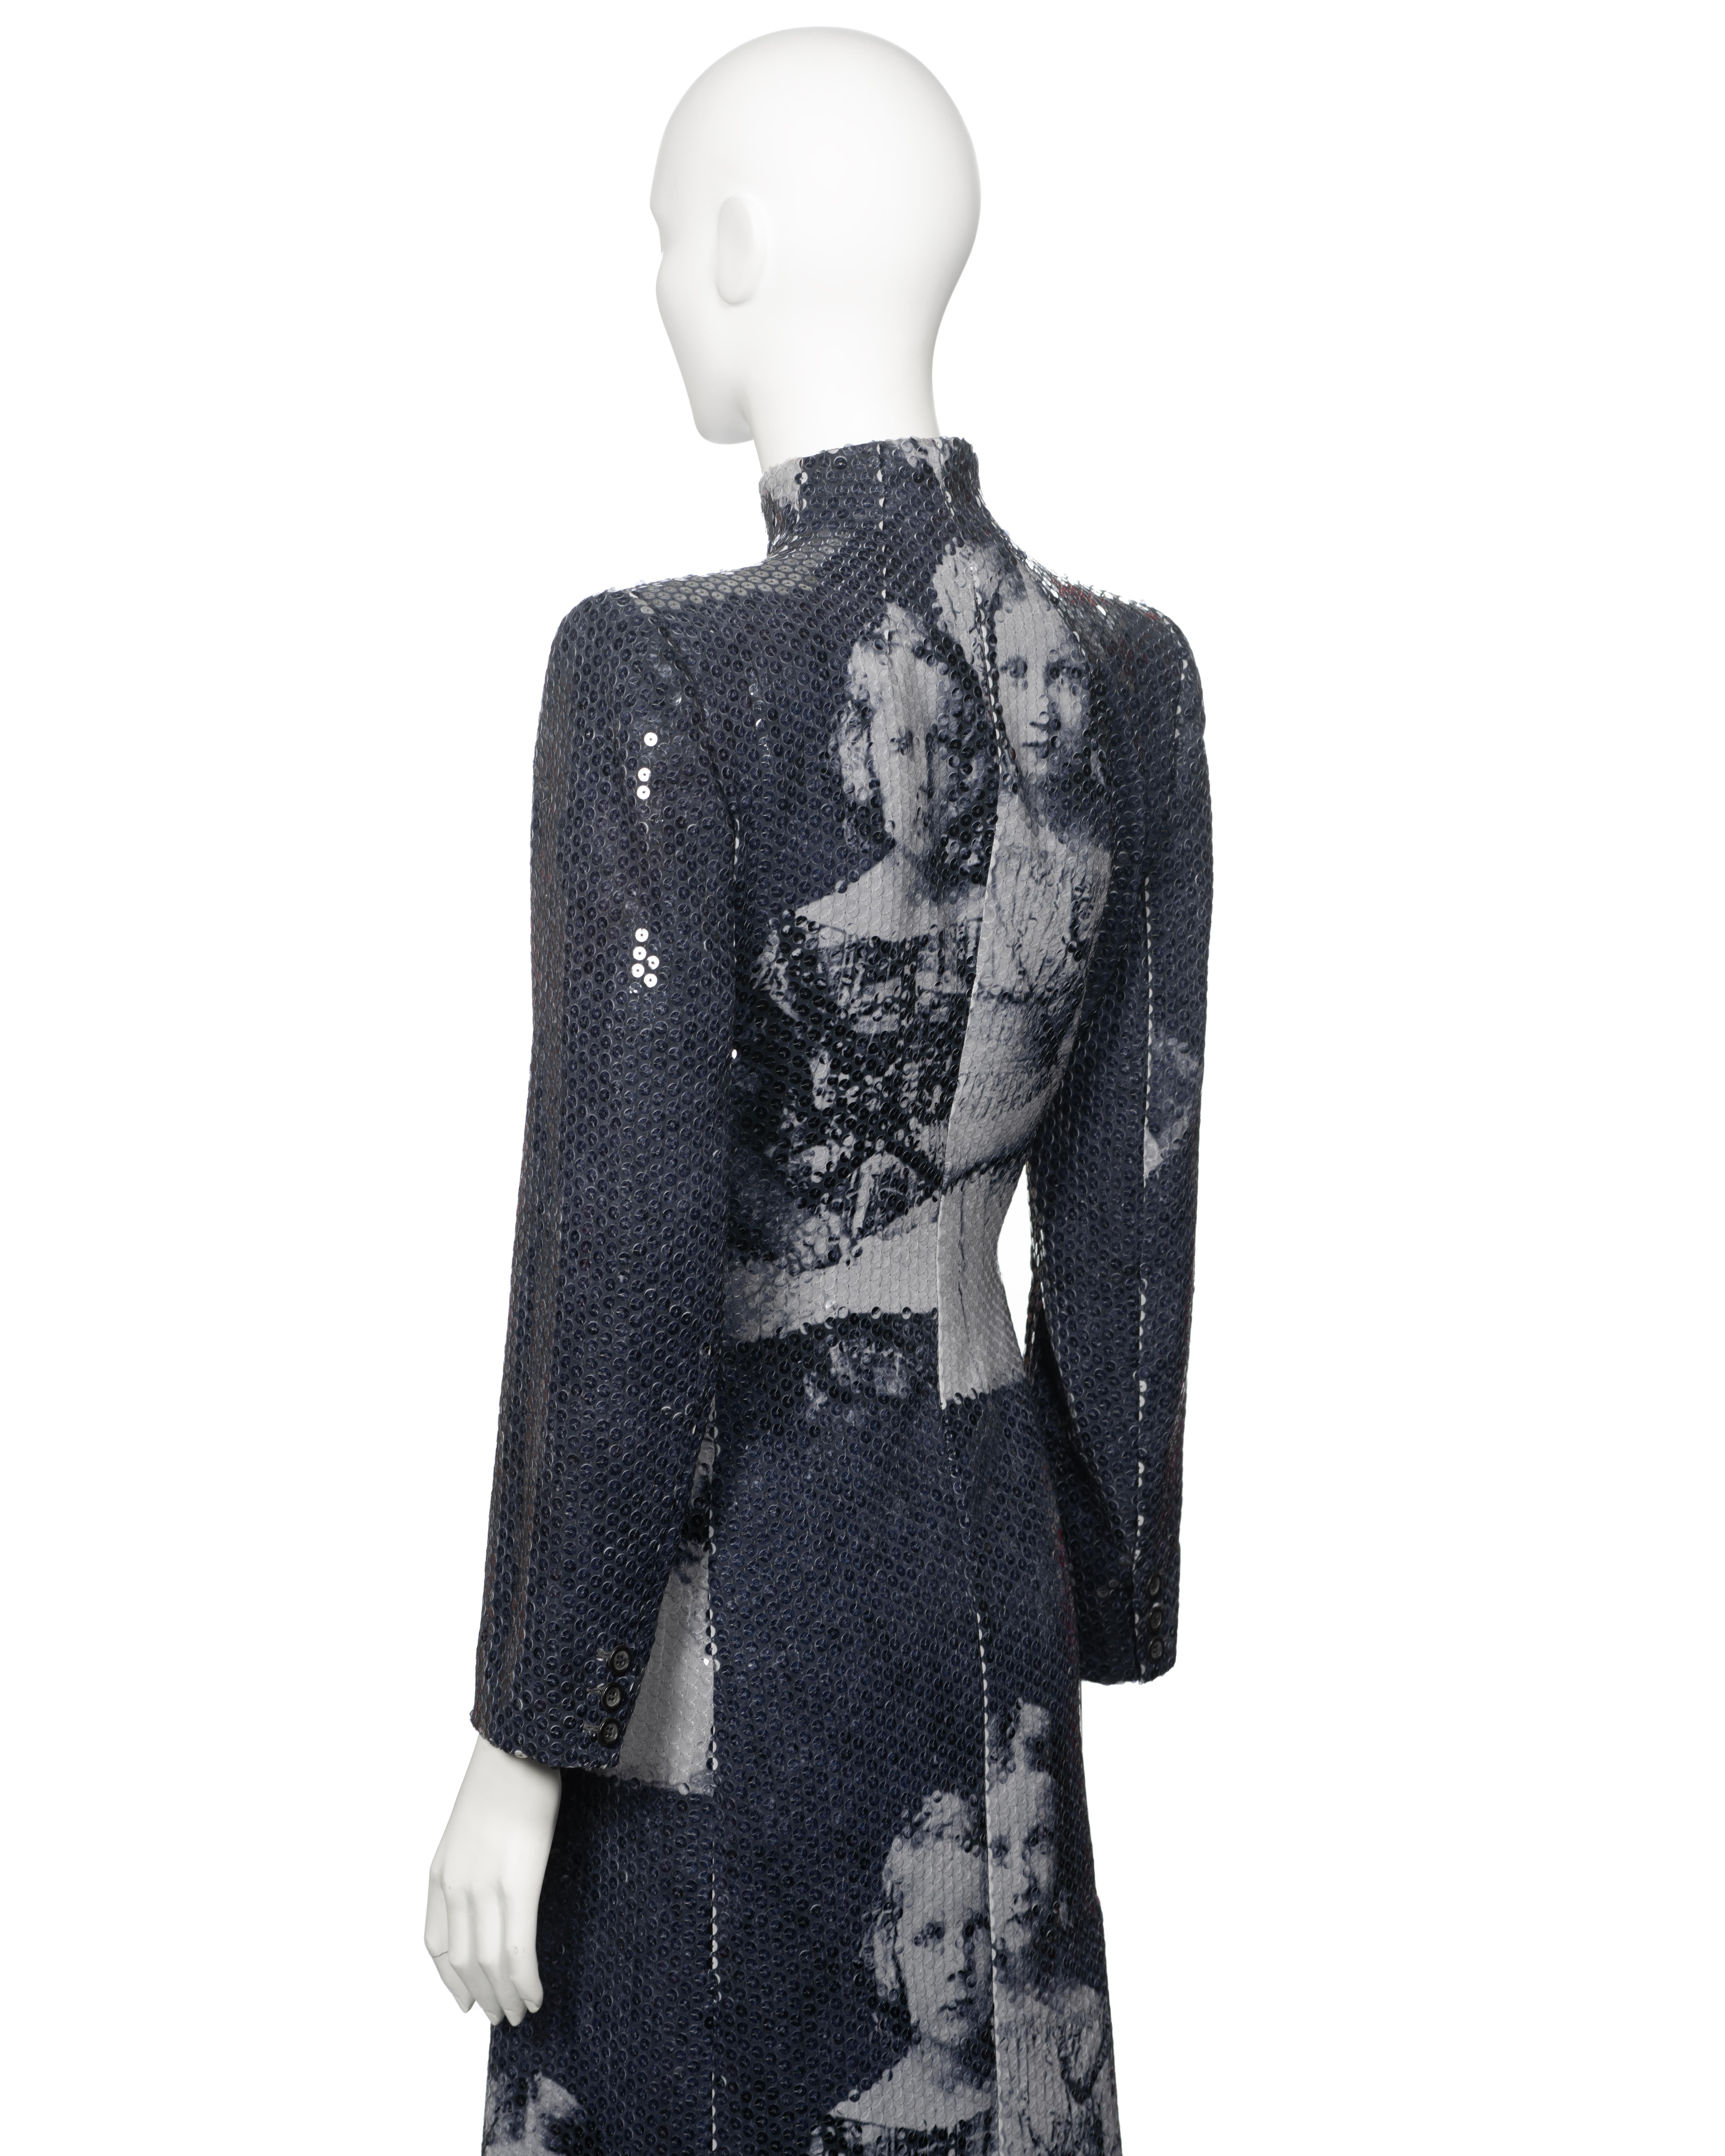 Alexander McQueen Sequin 'Joan' Evening Coat, fw 1998 For Sale 5